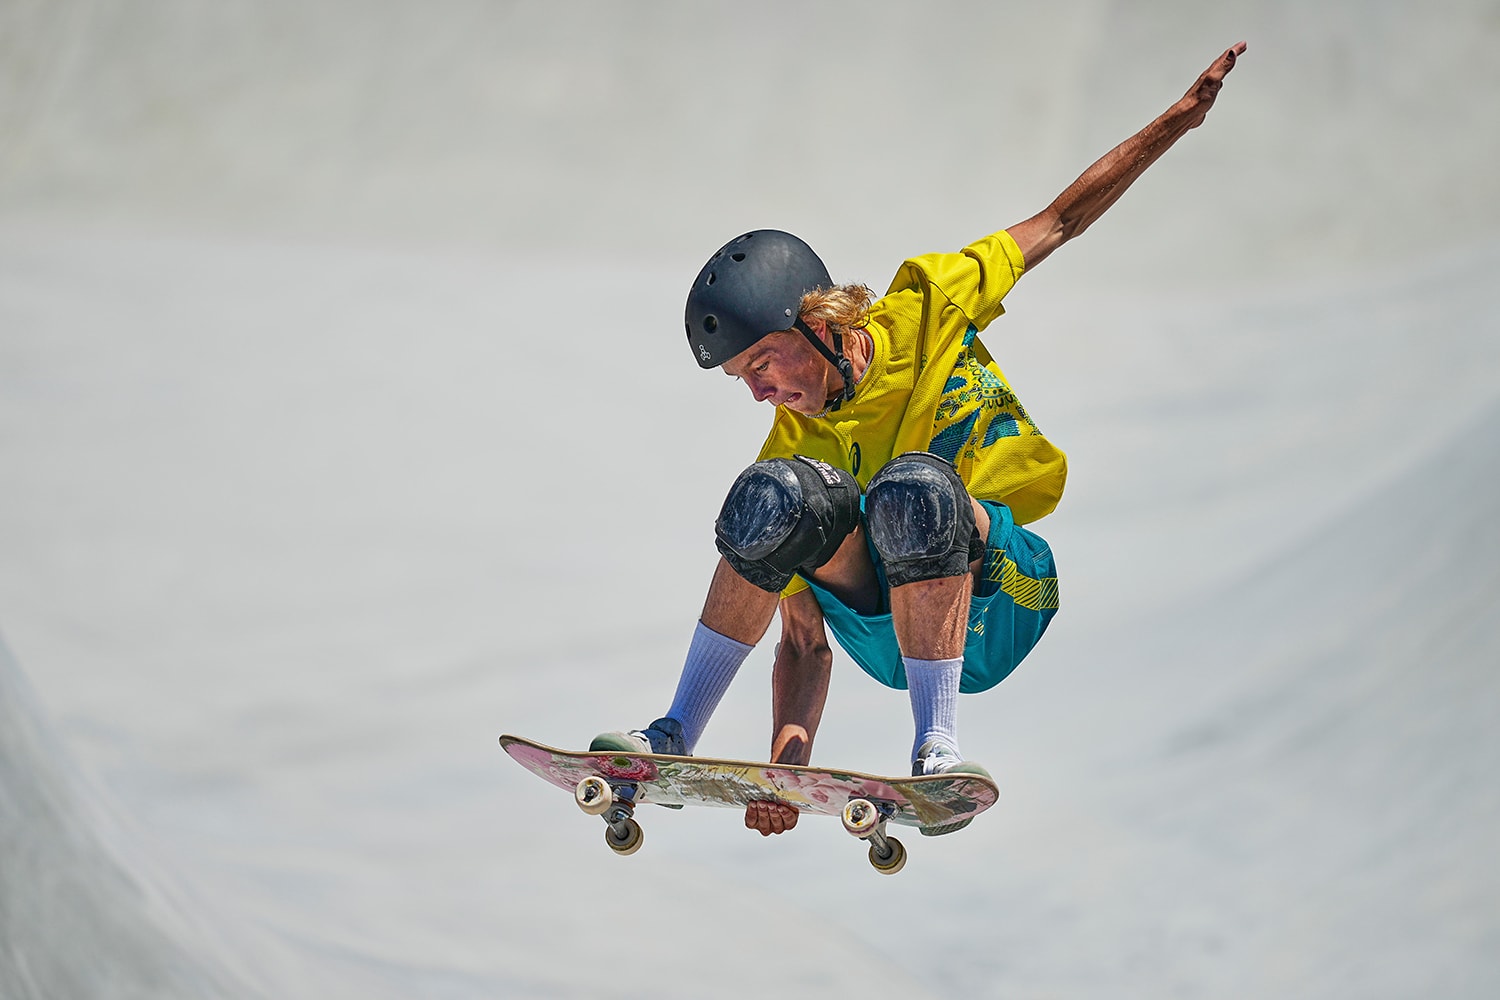 澳洲滑手 Keegan Palmer 以超高分 95.83 奪下東京奧運「男子滑板公園賽」項目金牌